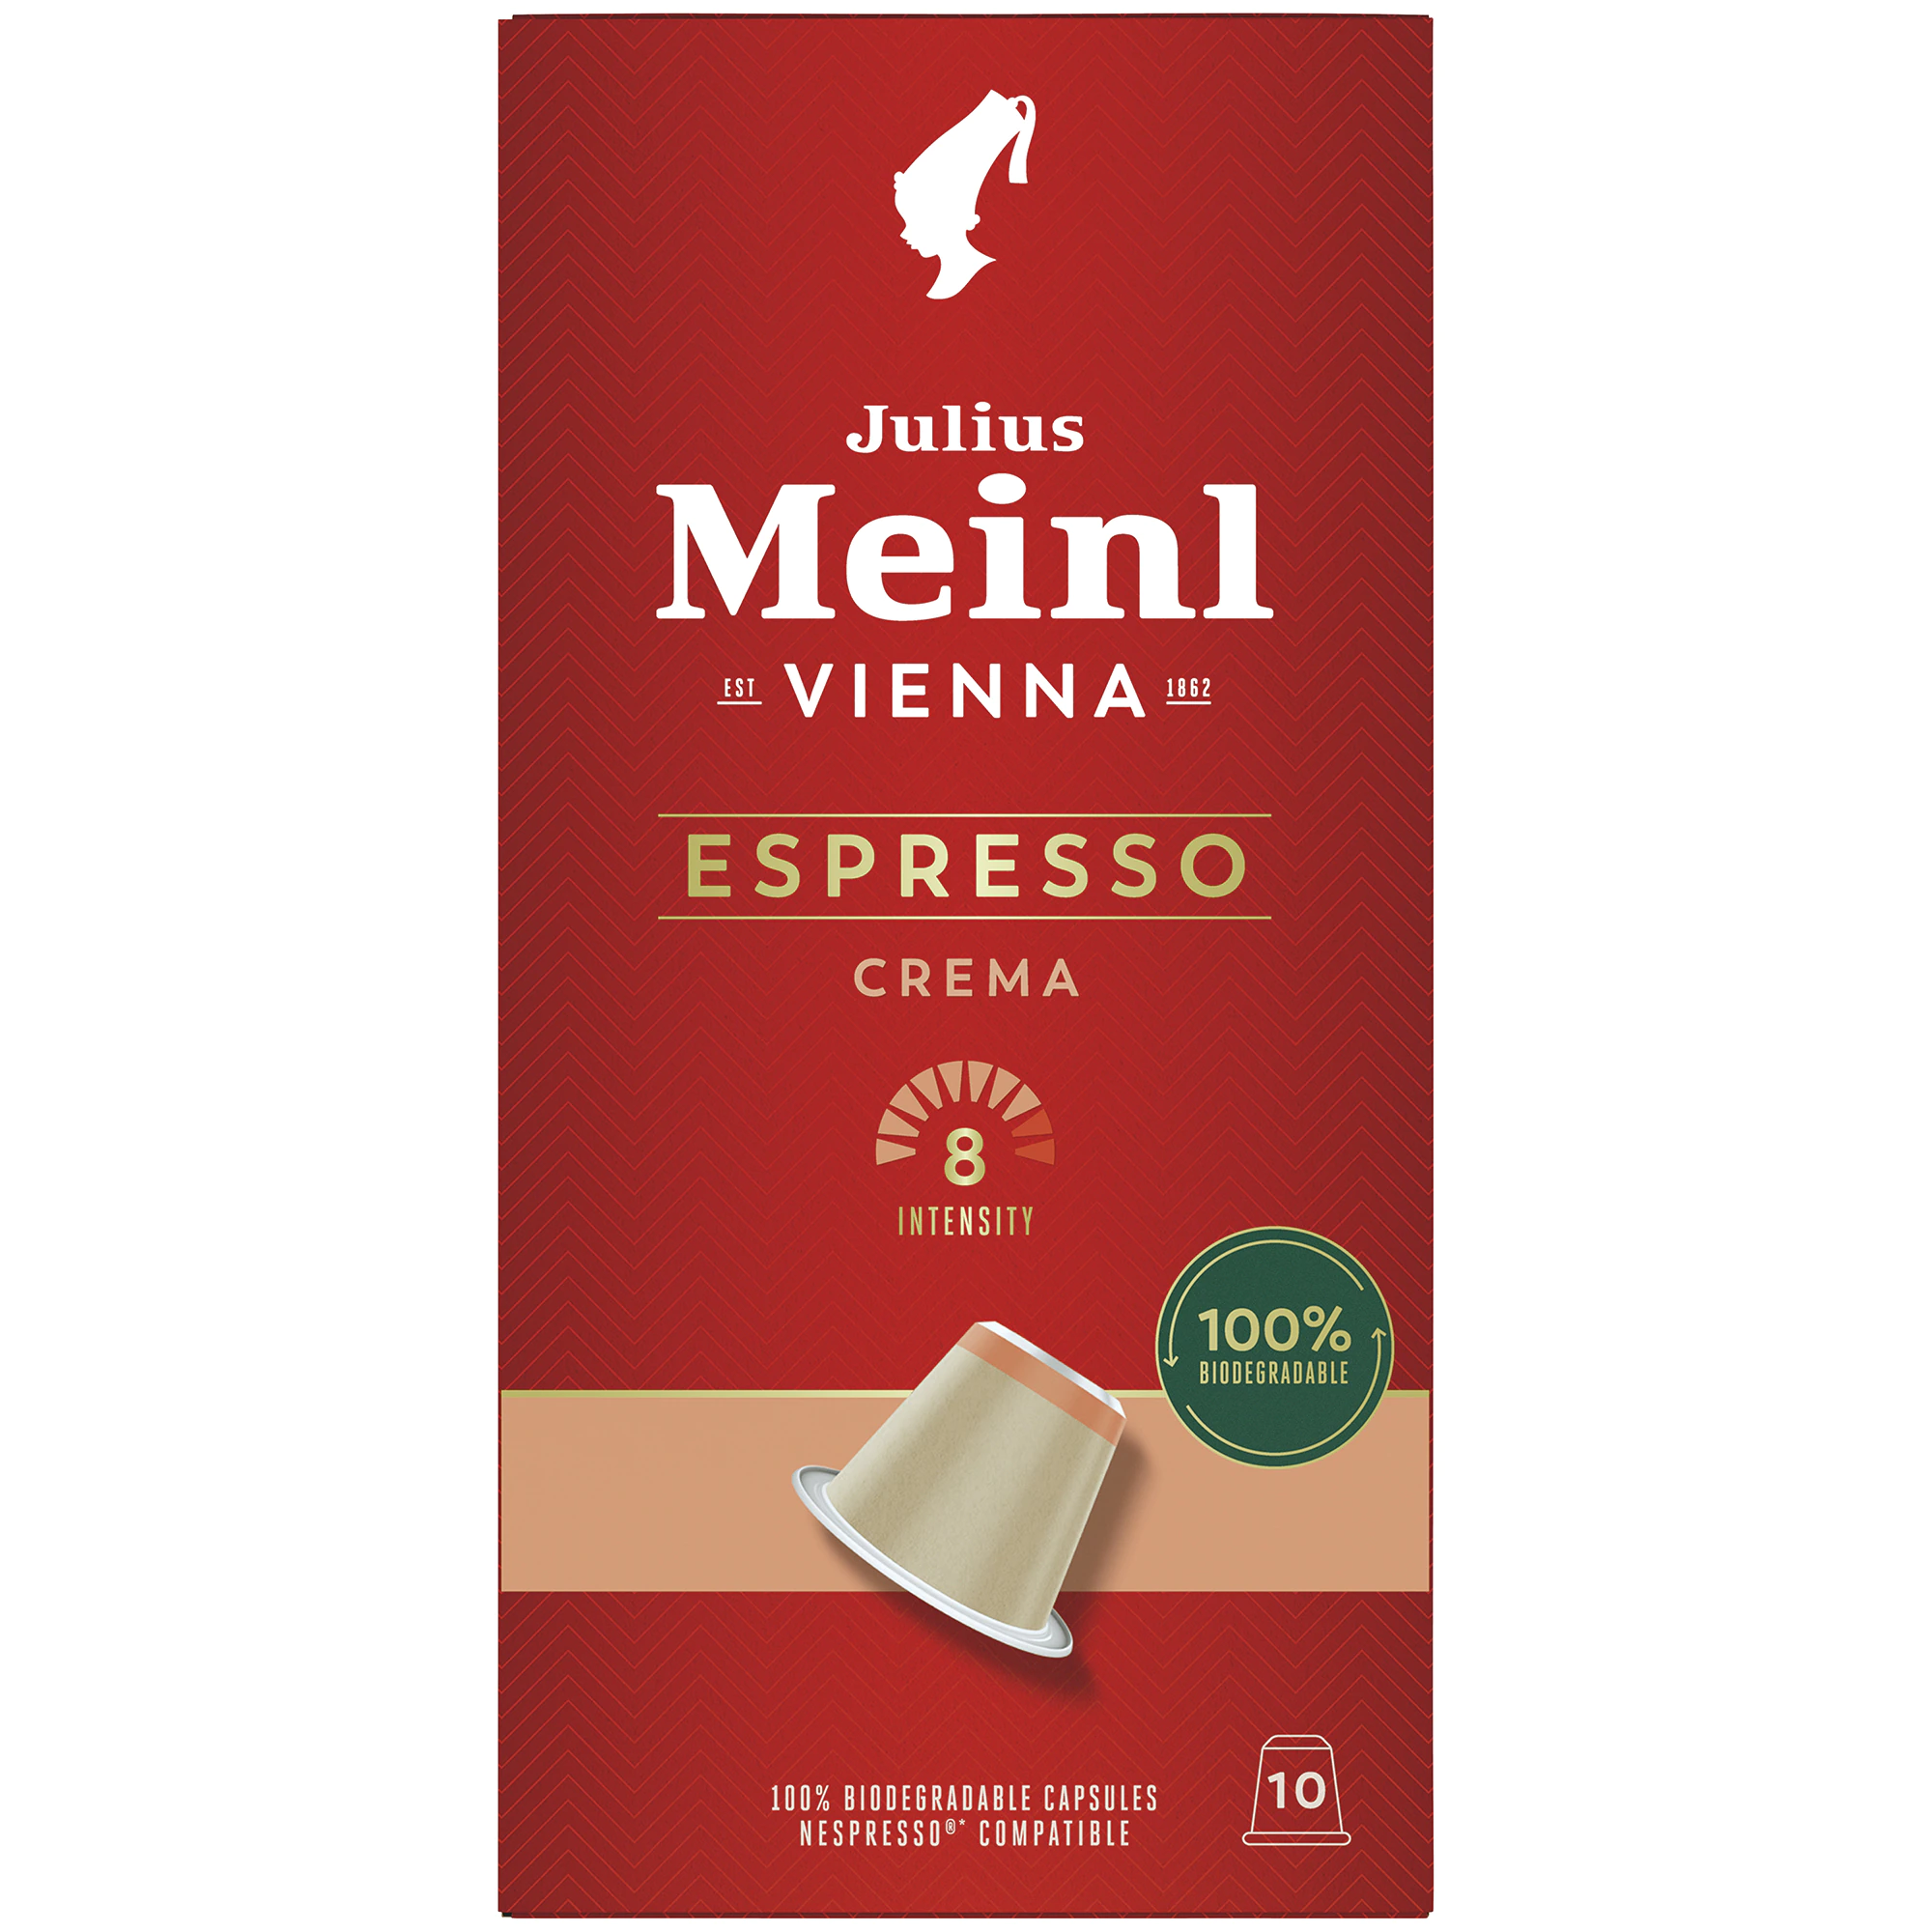 julius meinl espresso crema 10 capsule nespresso kfea 315663d11514bdb3a Julius Meinl Aparat Cafea